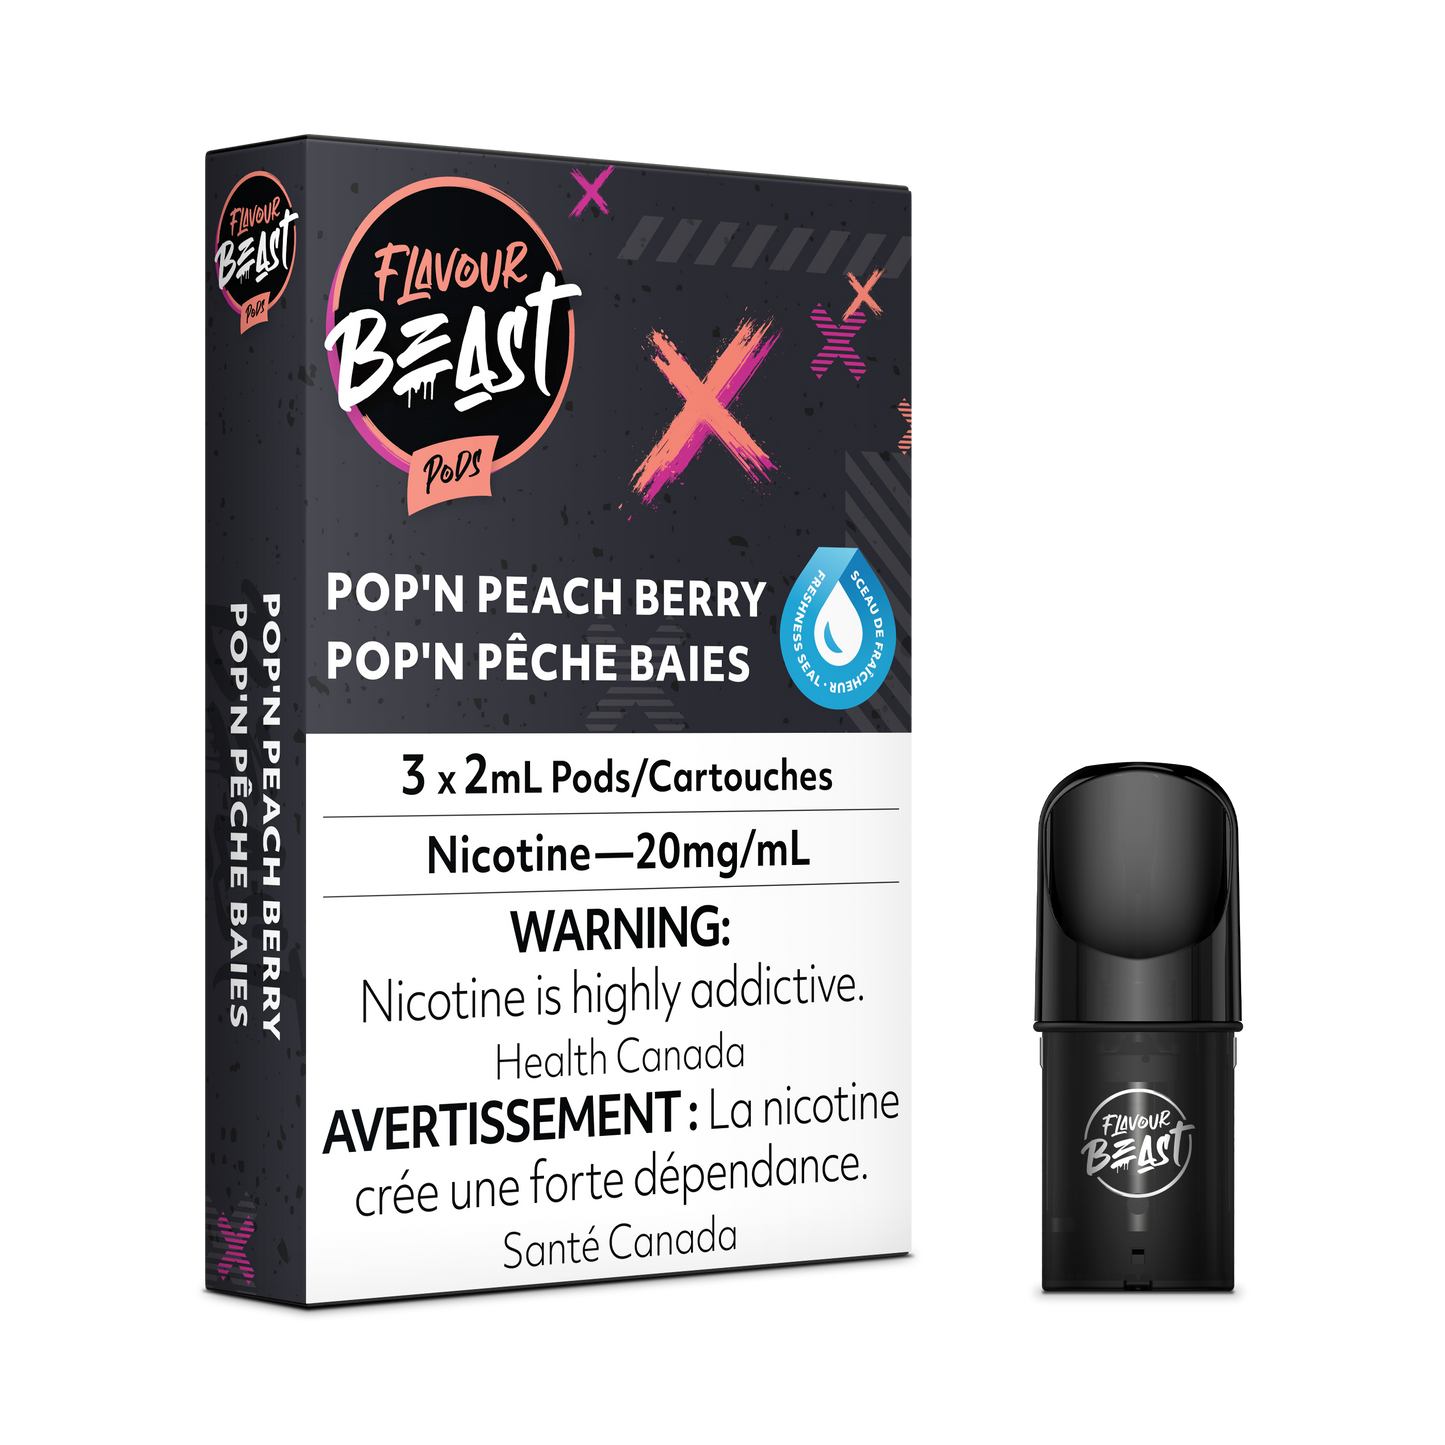 Flavour Beast Pod Pack - Packin' Peach Berry (Pop'n Peach Berry)